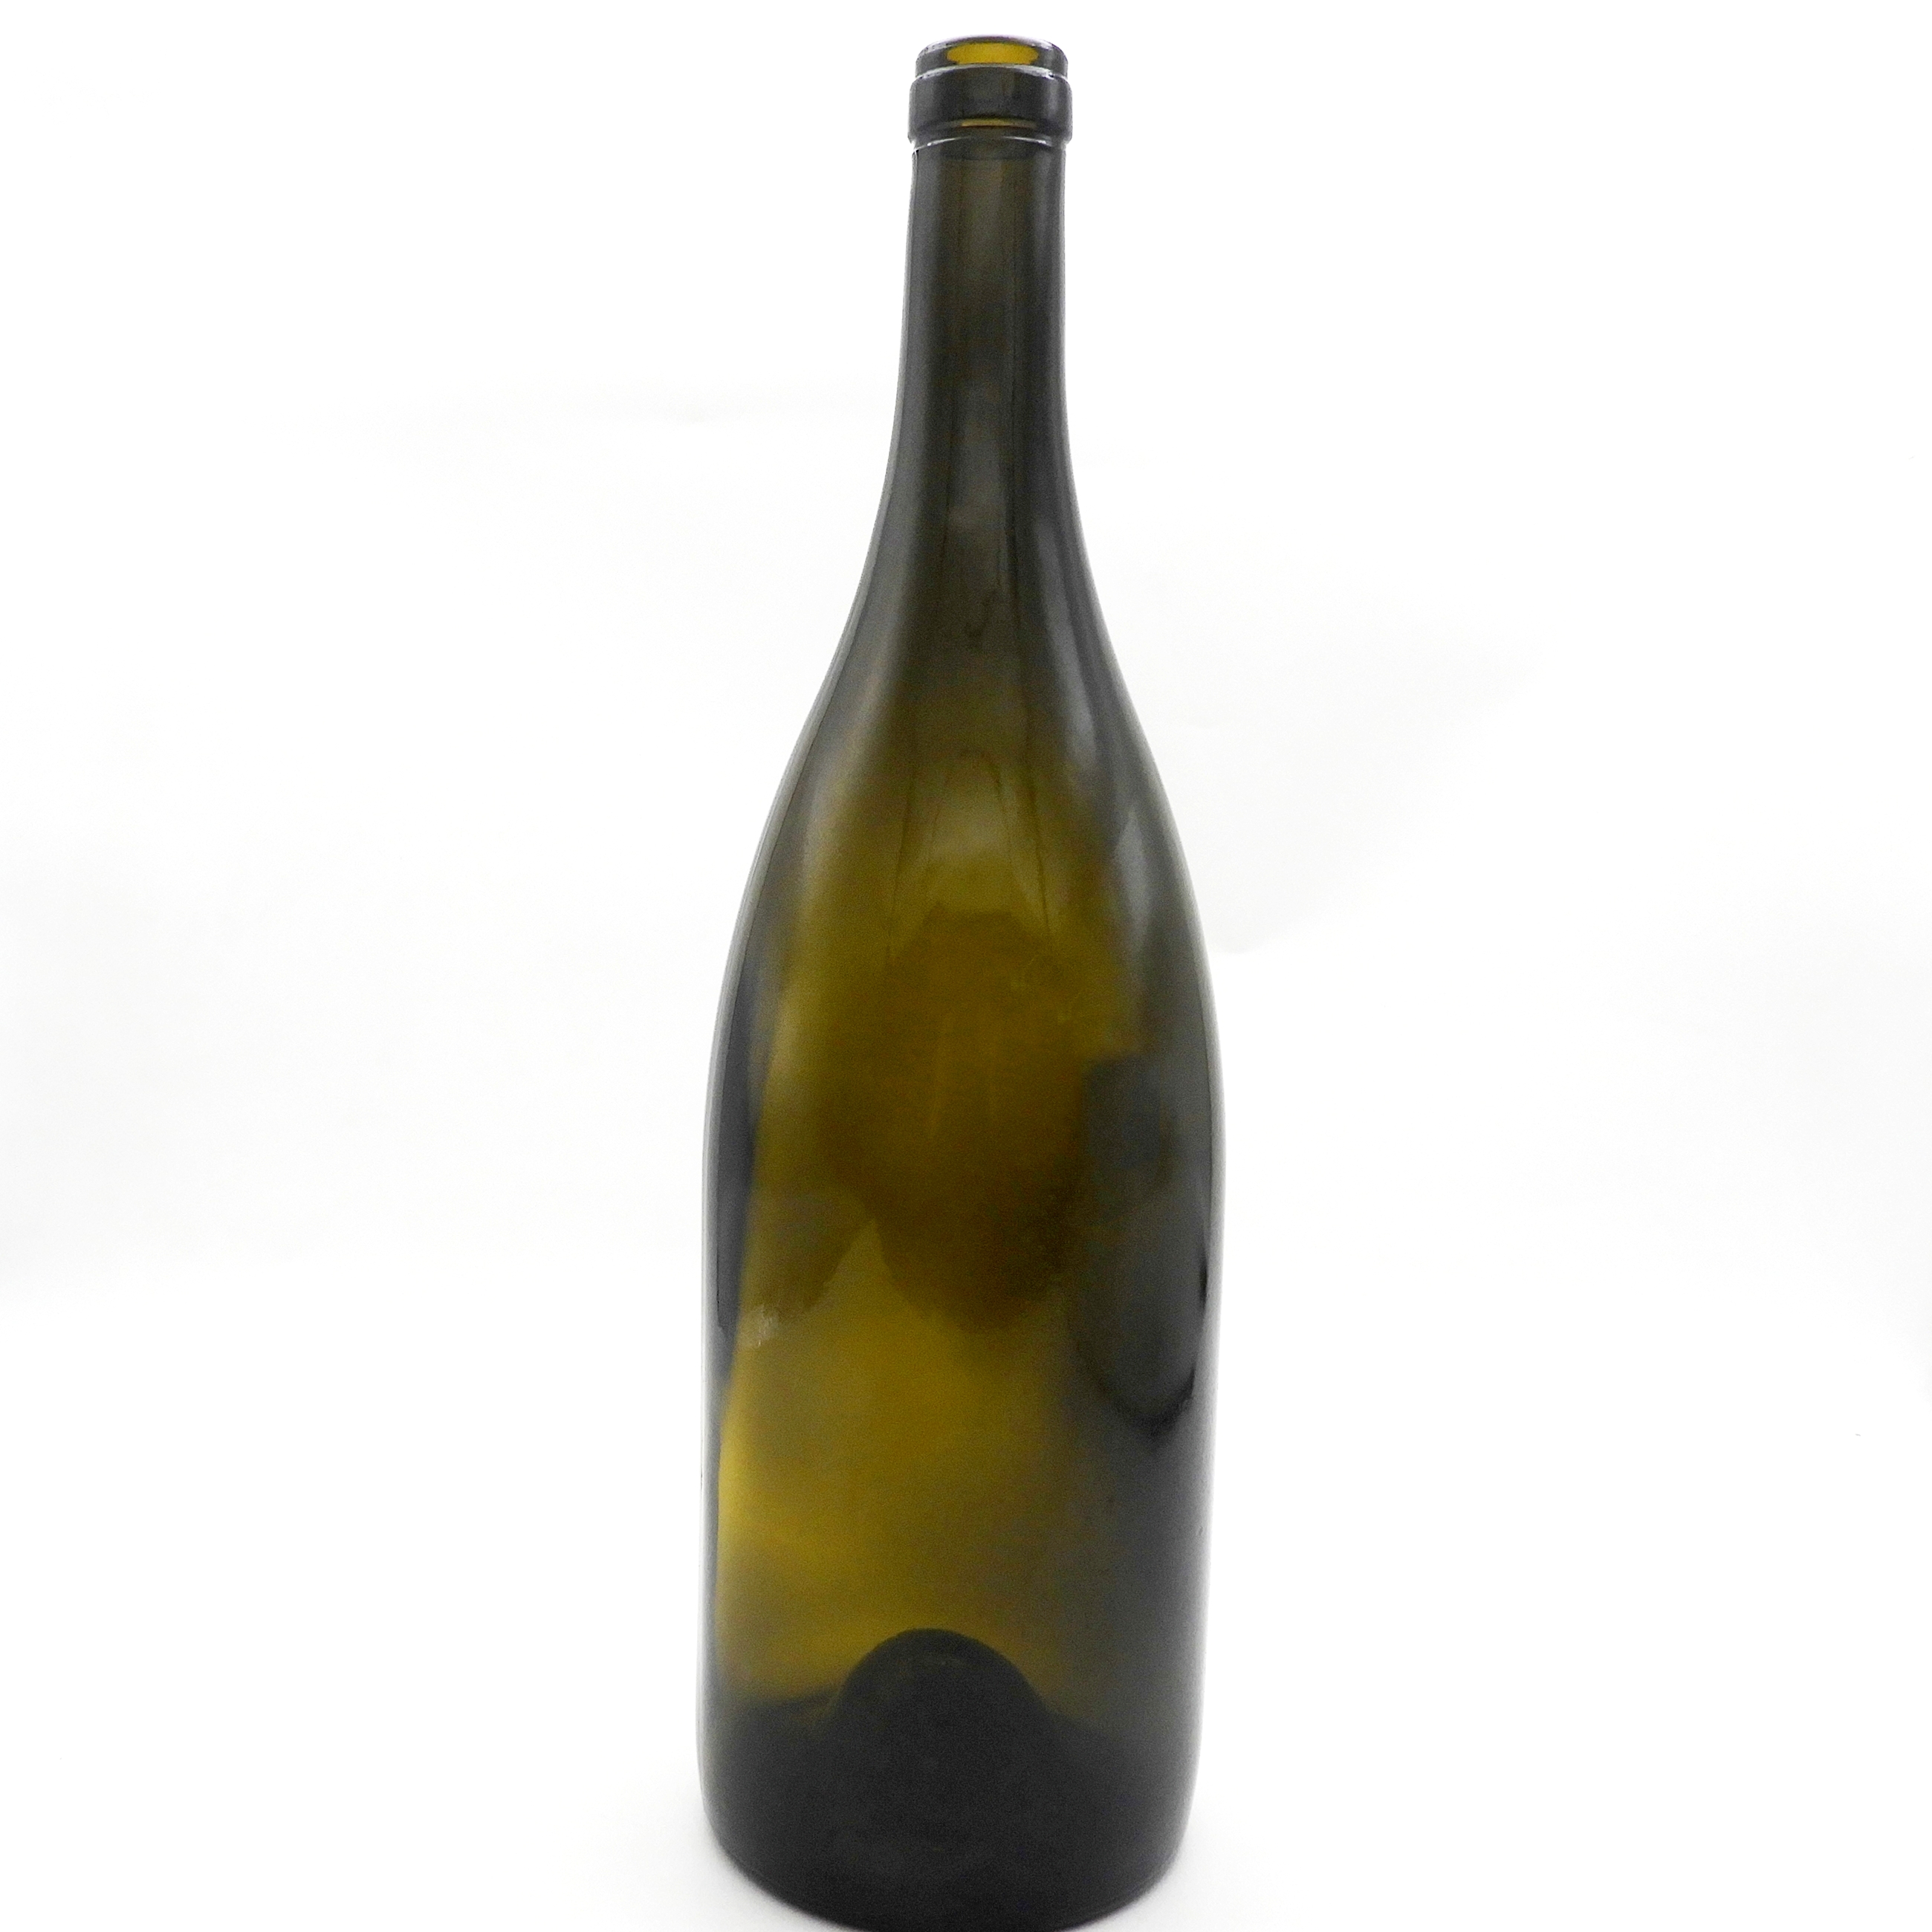 1500ml Burgundy Wine Bottle